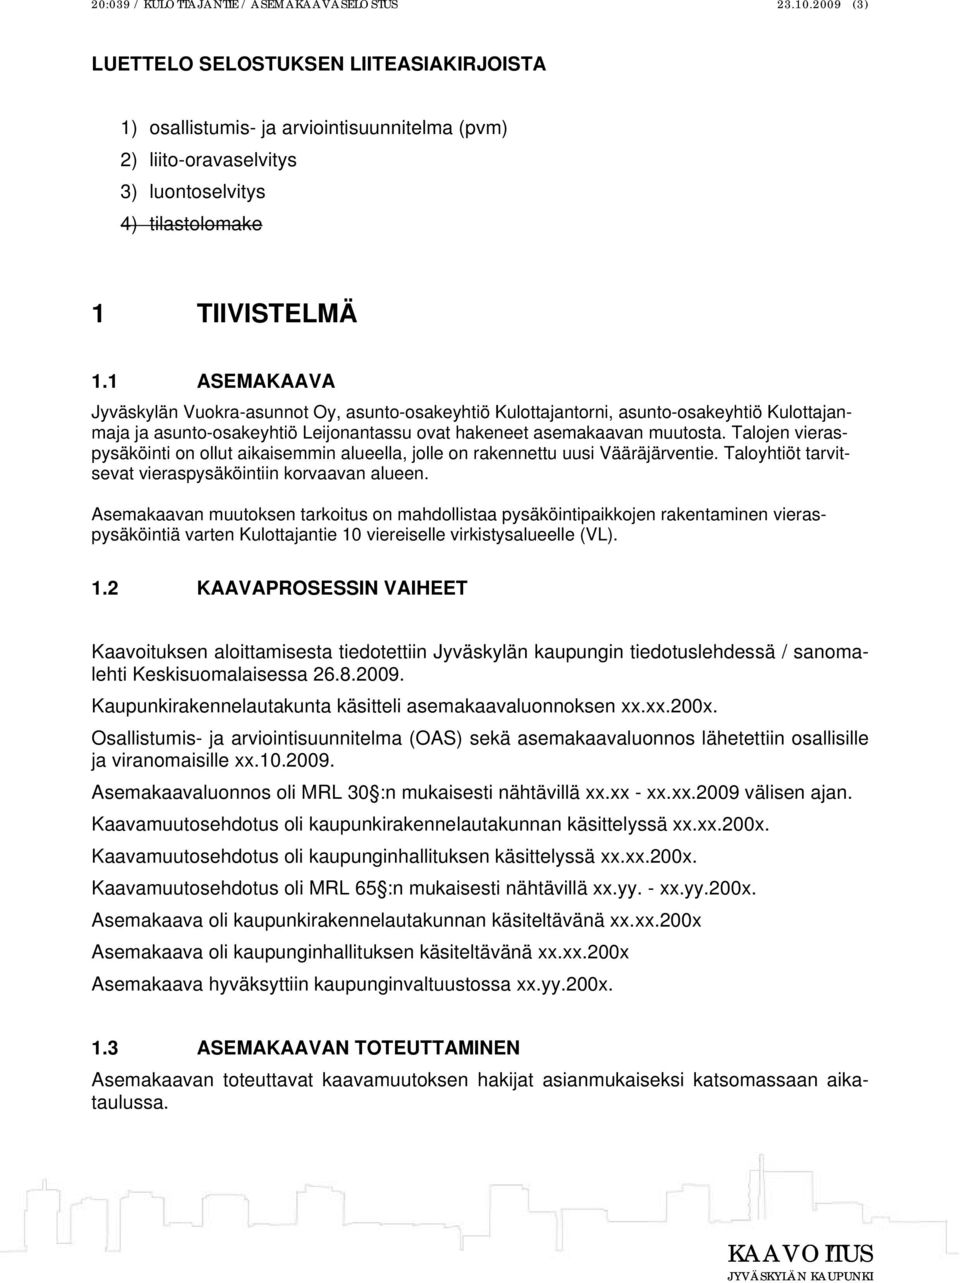 1 ASEMAKAAVA Jyväskylän Vuokra-asunnot Oy, asunto-osakeyhtiö Kulottajantorni, asunto-osakeyhtiö Kulottajanmaja ja asunto-osakeyhtiö Leijonantassu ovat hakeneet asemakaavan muutosta.